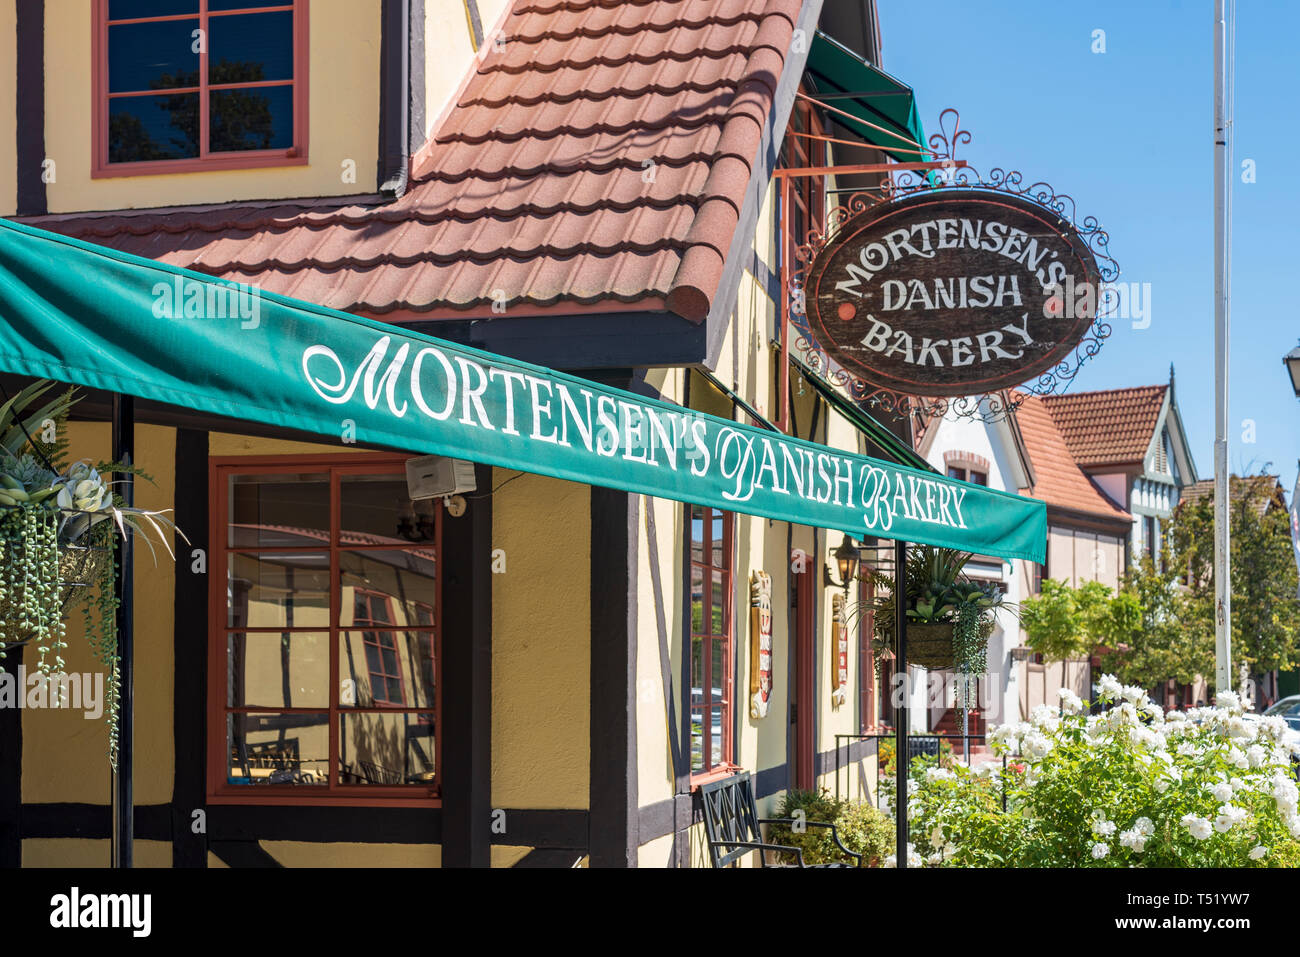 Boulangerie de la rue montrant green banner et panneau en bois au-dessus de la porte. Mortensen danois de la boulangerie. Banque D'Images